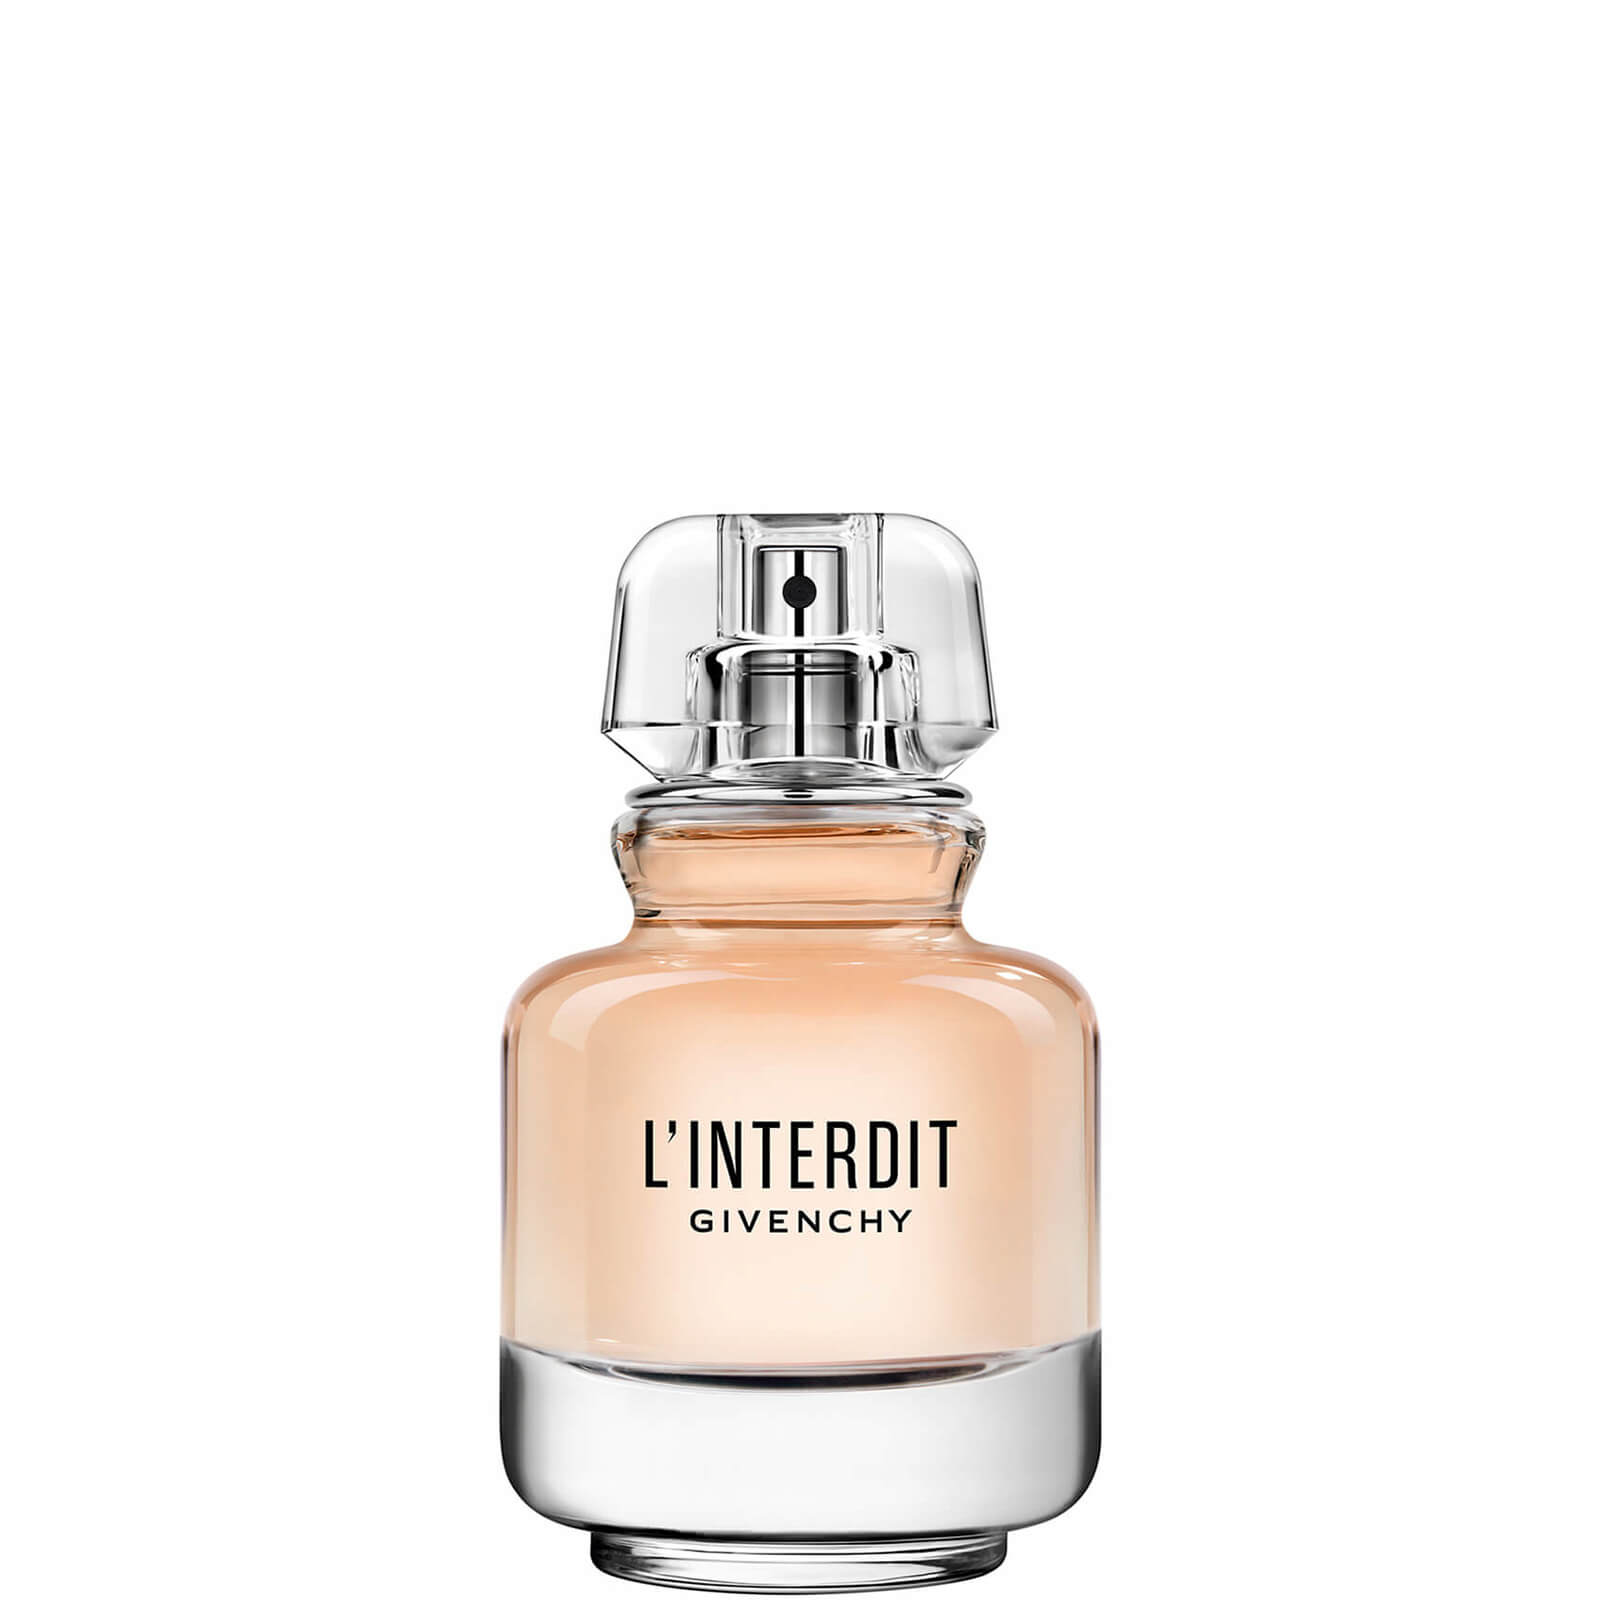 Photos - Women's Fragrance Givenchy L'Interdit Eau de Parfum Hair Mist 35ml P069109 